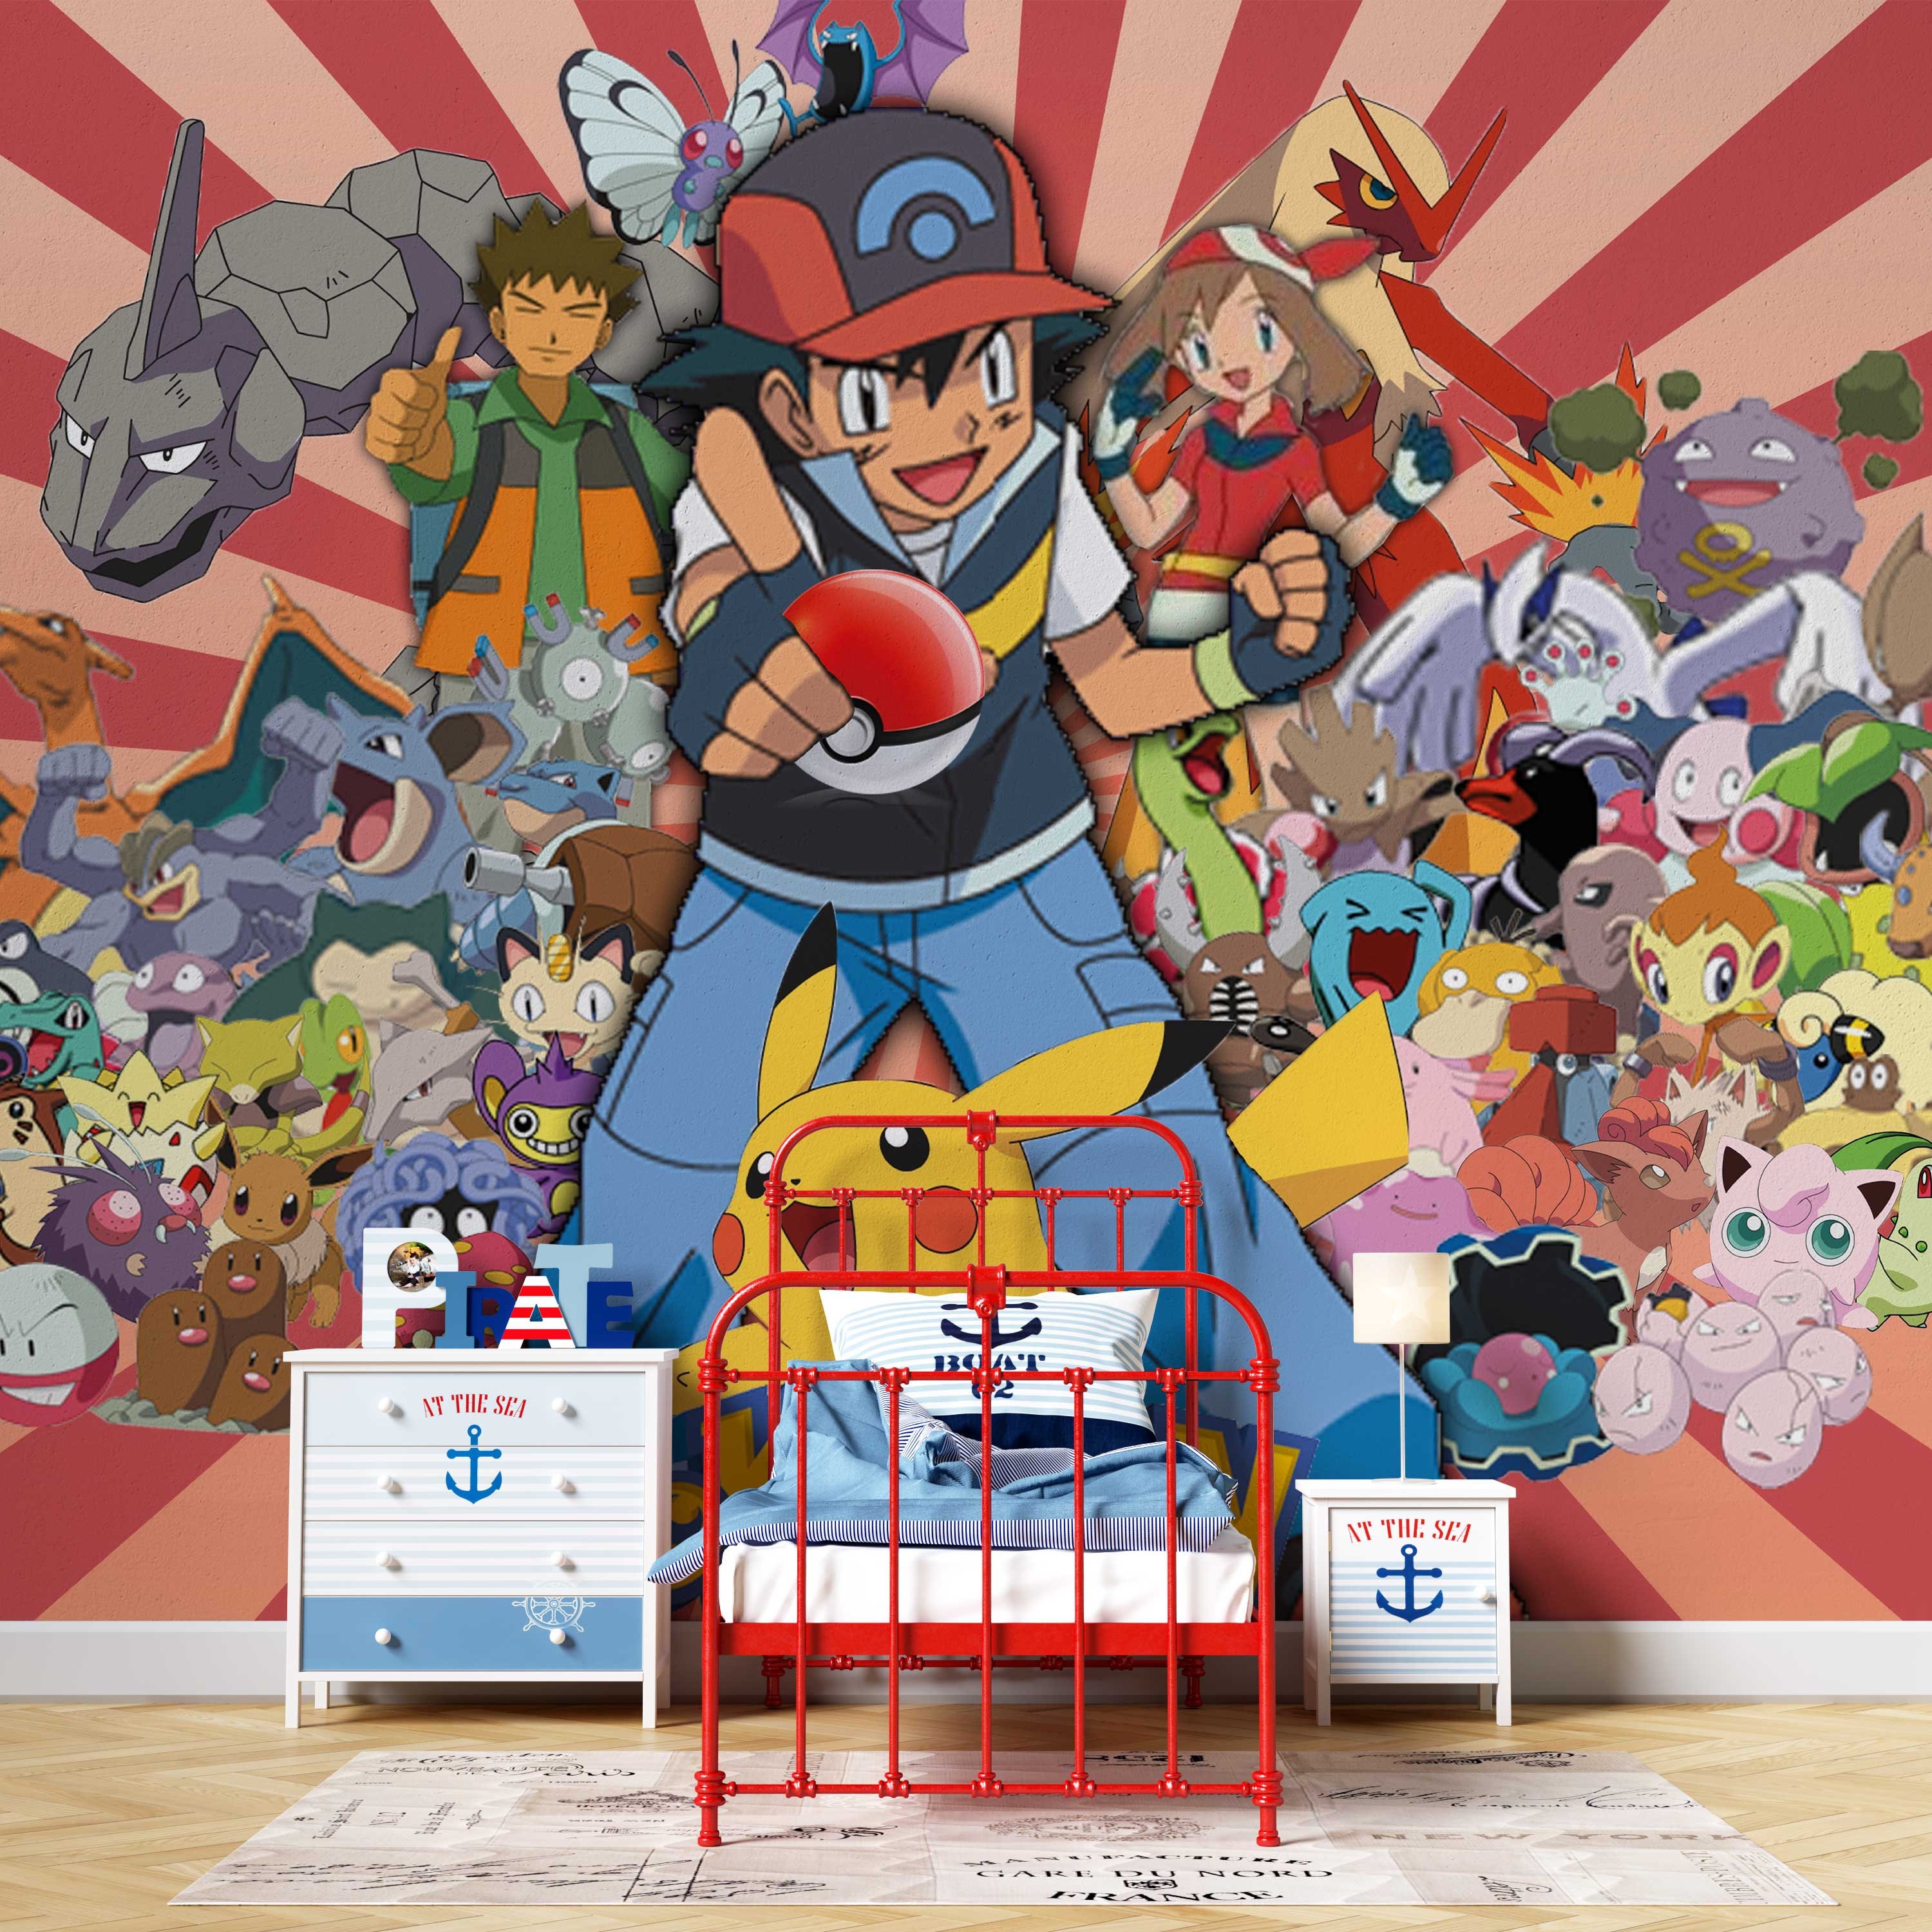 Sticker mural Pokemon, similaire au personnage de Pikachu, Sticker